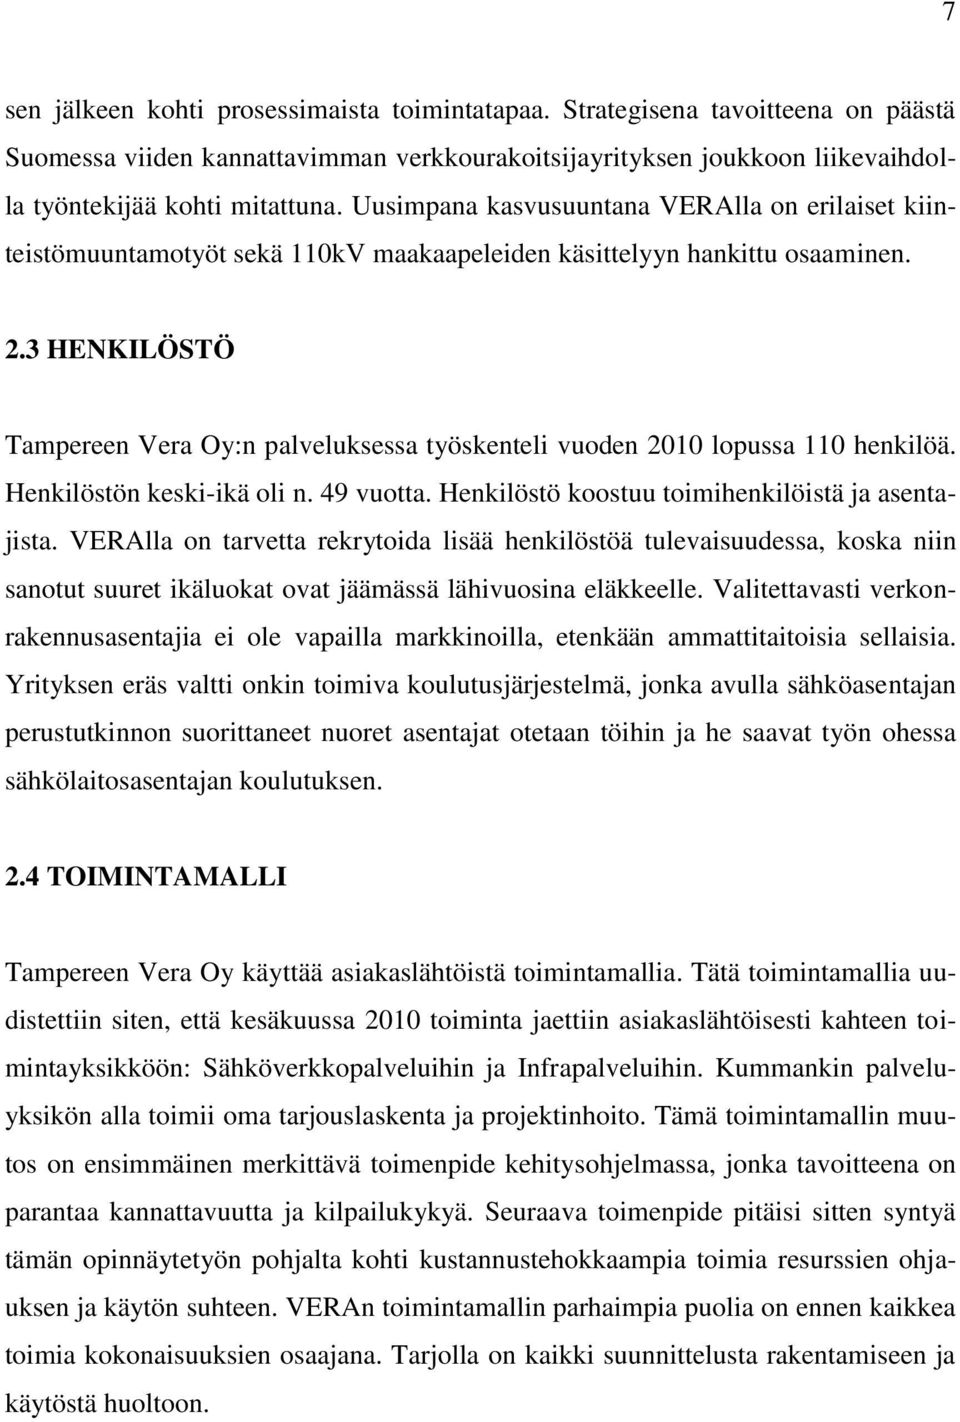 3 HENKILÖSTÖ Tampereen Vera Oy:n palveluksessa työskenteli vuoden 2010 lopussa 110 henkilöä. Henkilöstön keski-ikä oli n. 49 vuotta. Henkilöstö koostuu toimihenkilöistä ja asentajista.